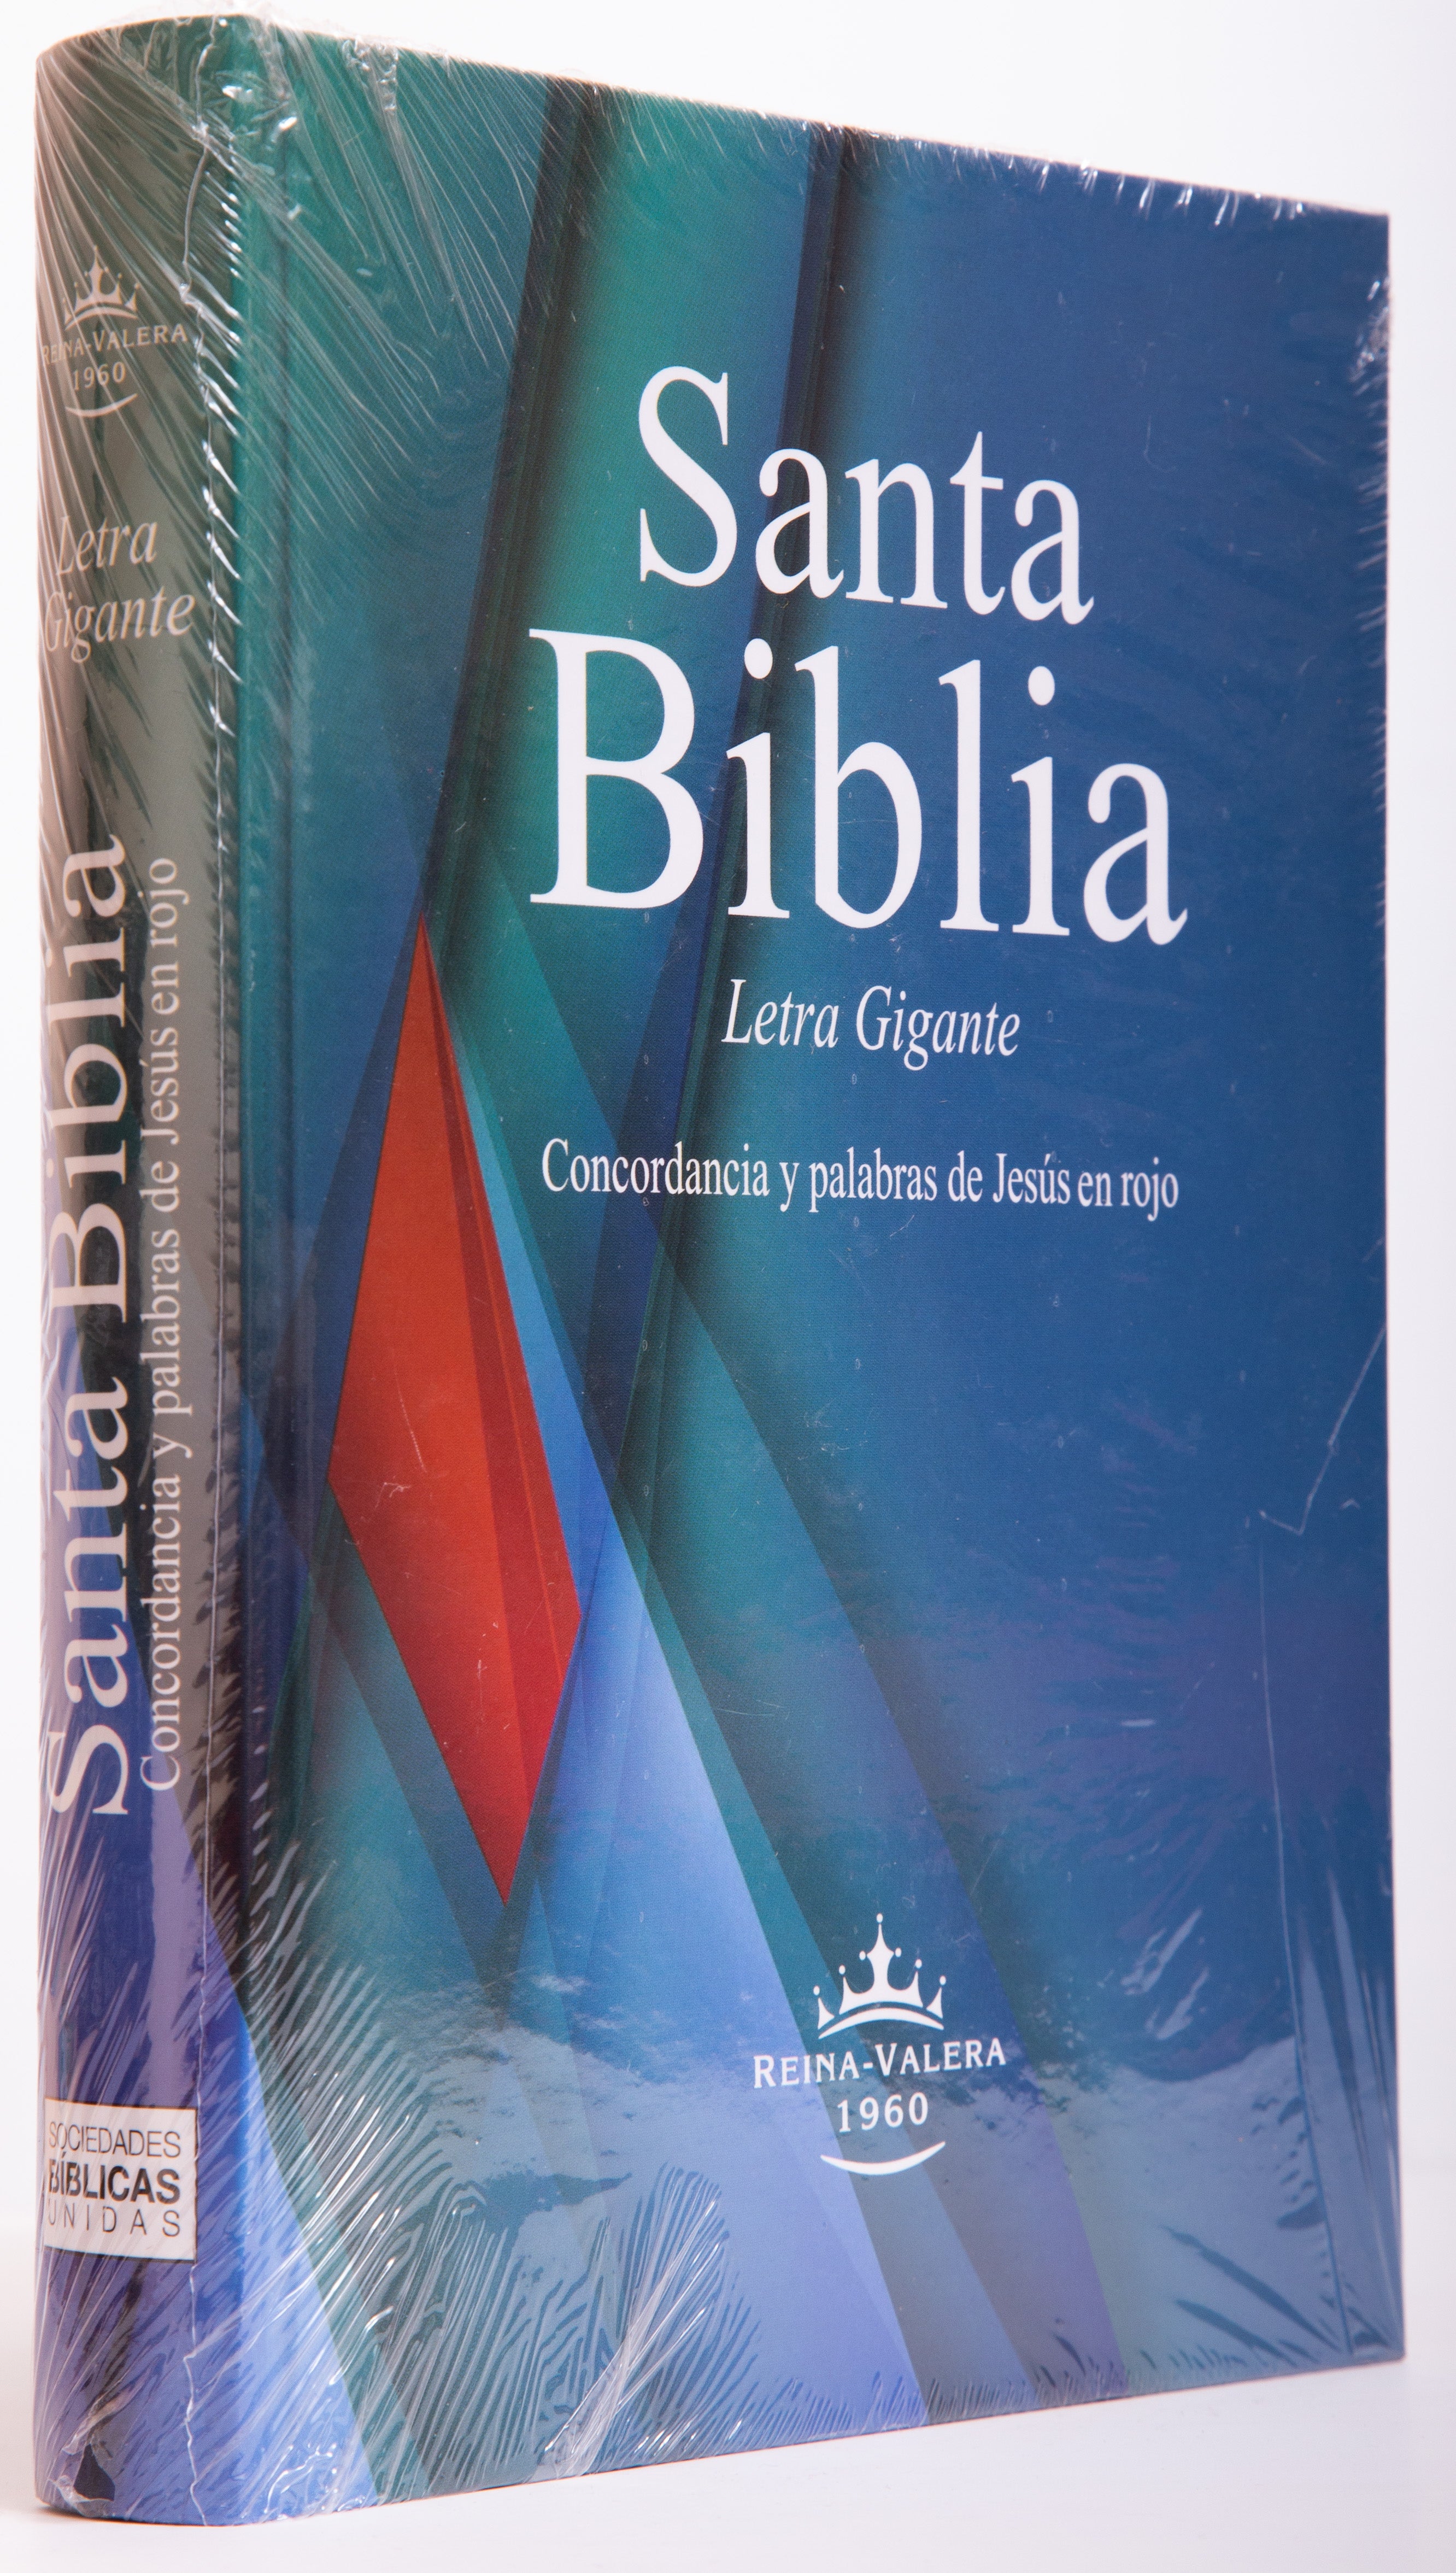 Biblia Letra Gigante canto blanco tapa dura - Librería Libros Cristianos - Biblia